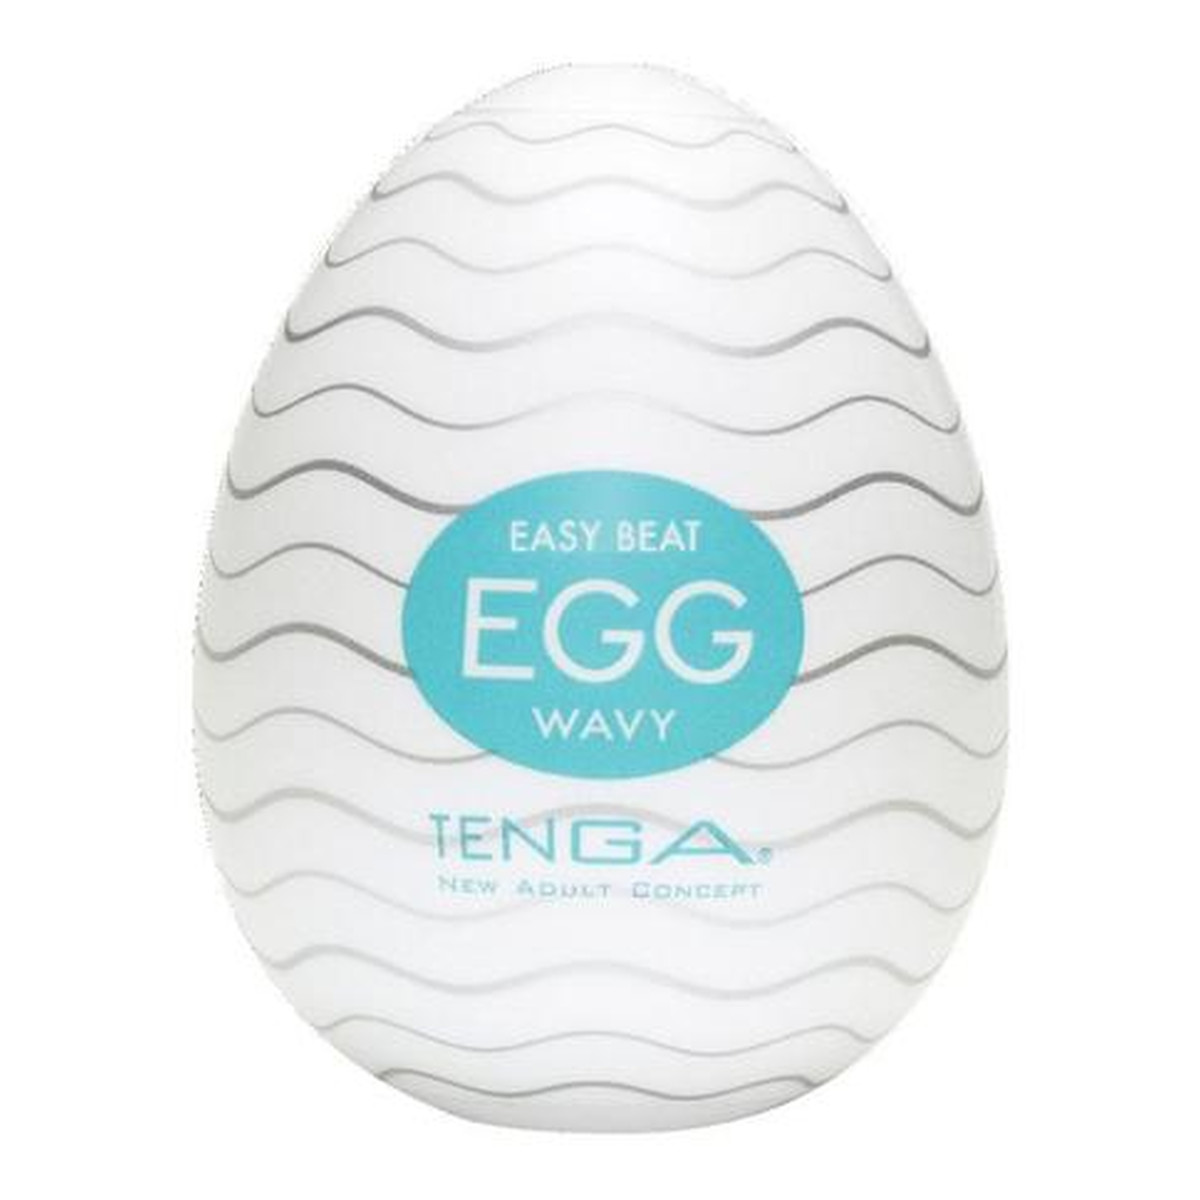 Tenga Easy beat egg wavy jednorazowy masturbator w kształcie jajka